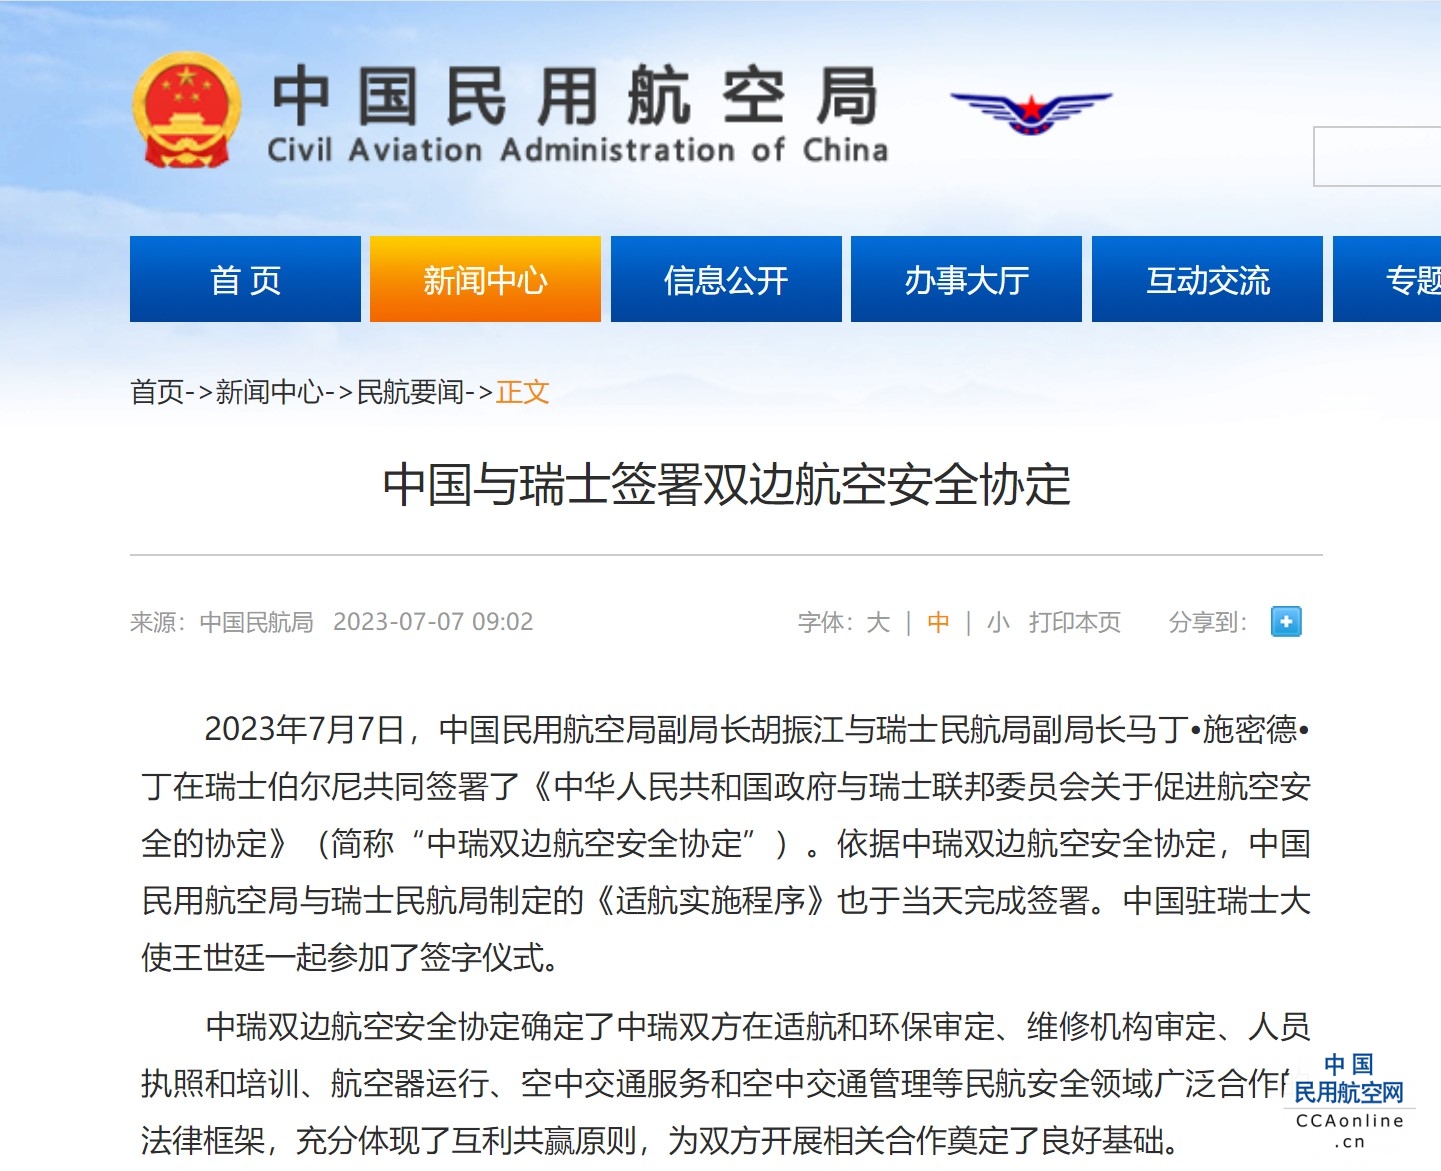 中国与瑞士签署双边航空安全协定